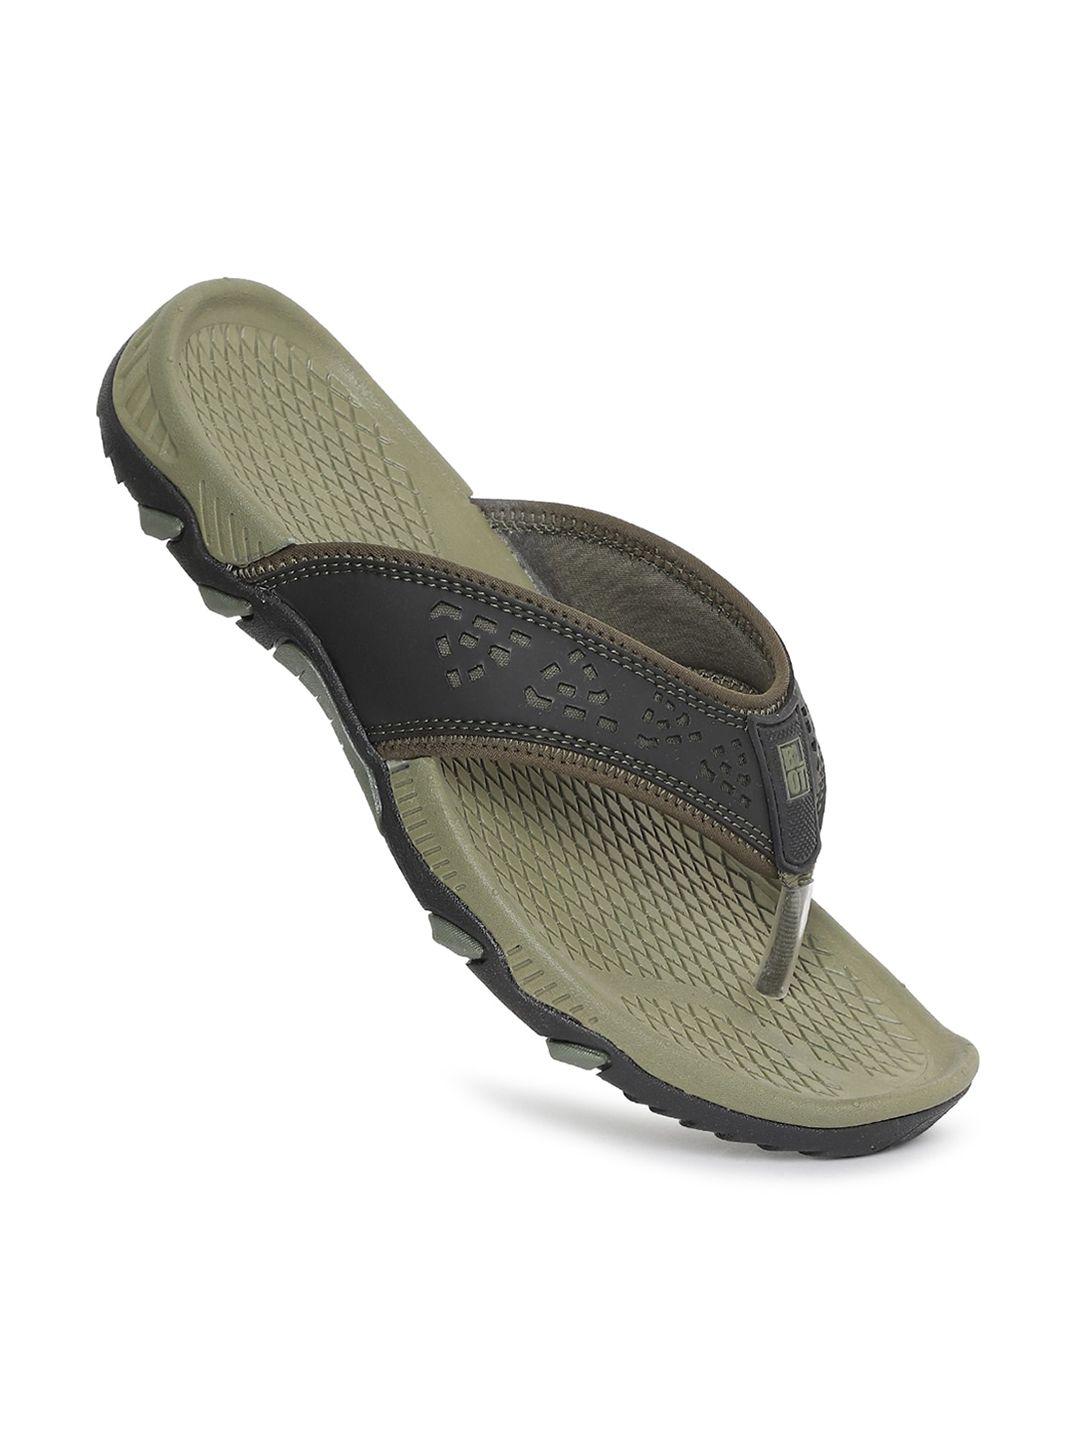 paragon-men-grey-&-olive-green-rubber-thong-flip-flops